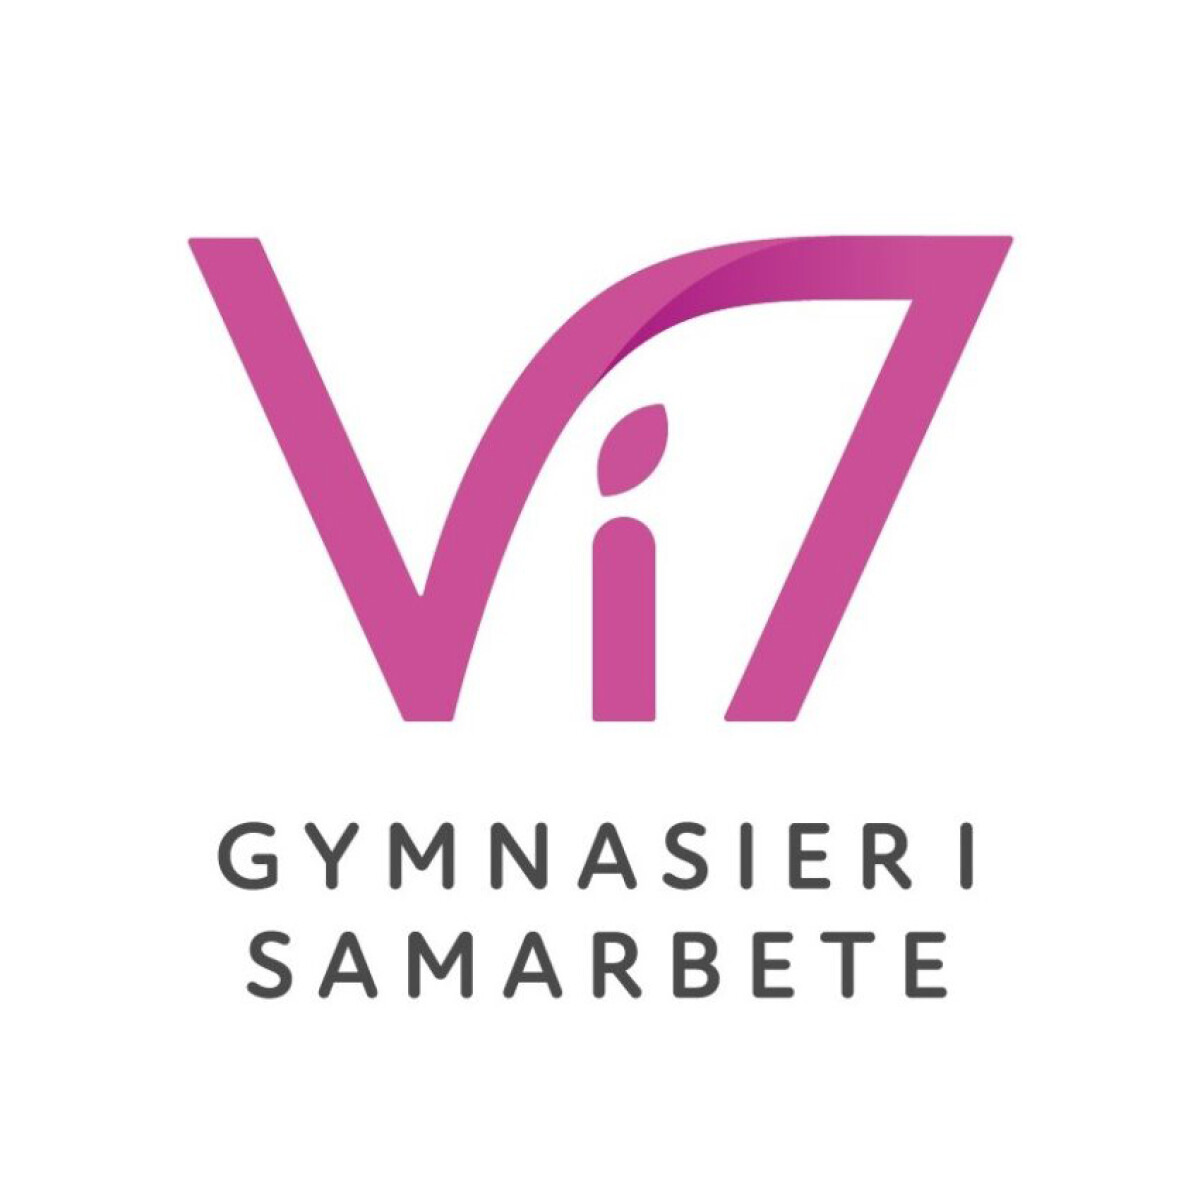 Vi7 logo v4